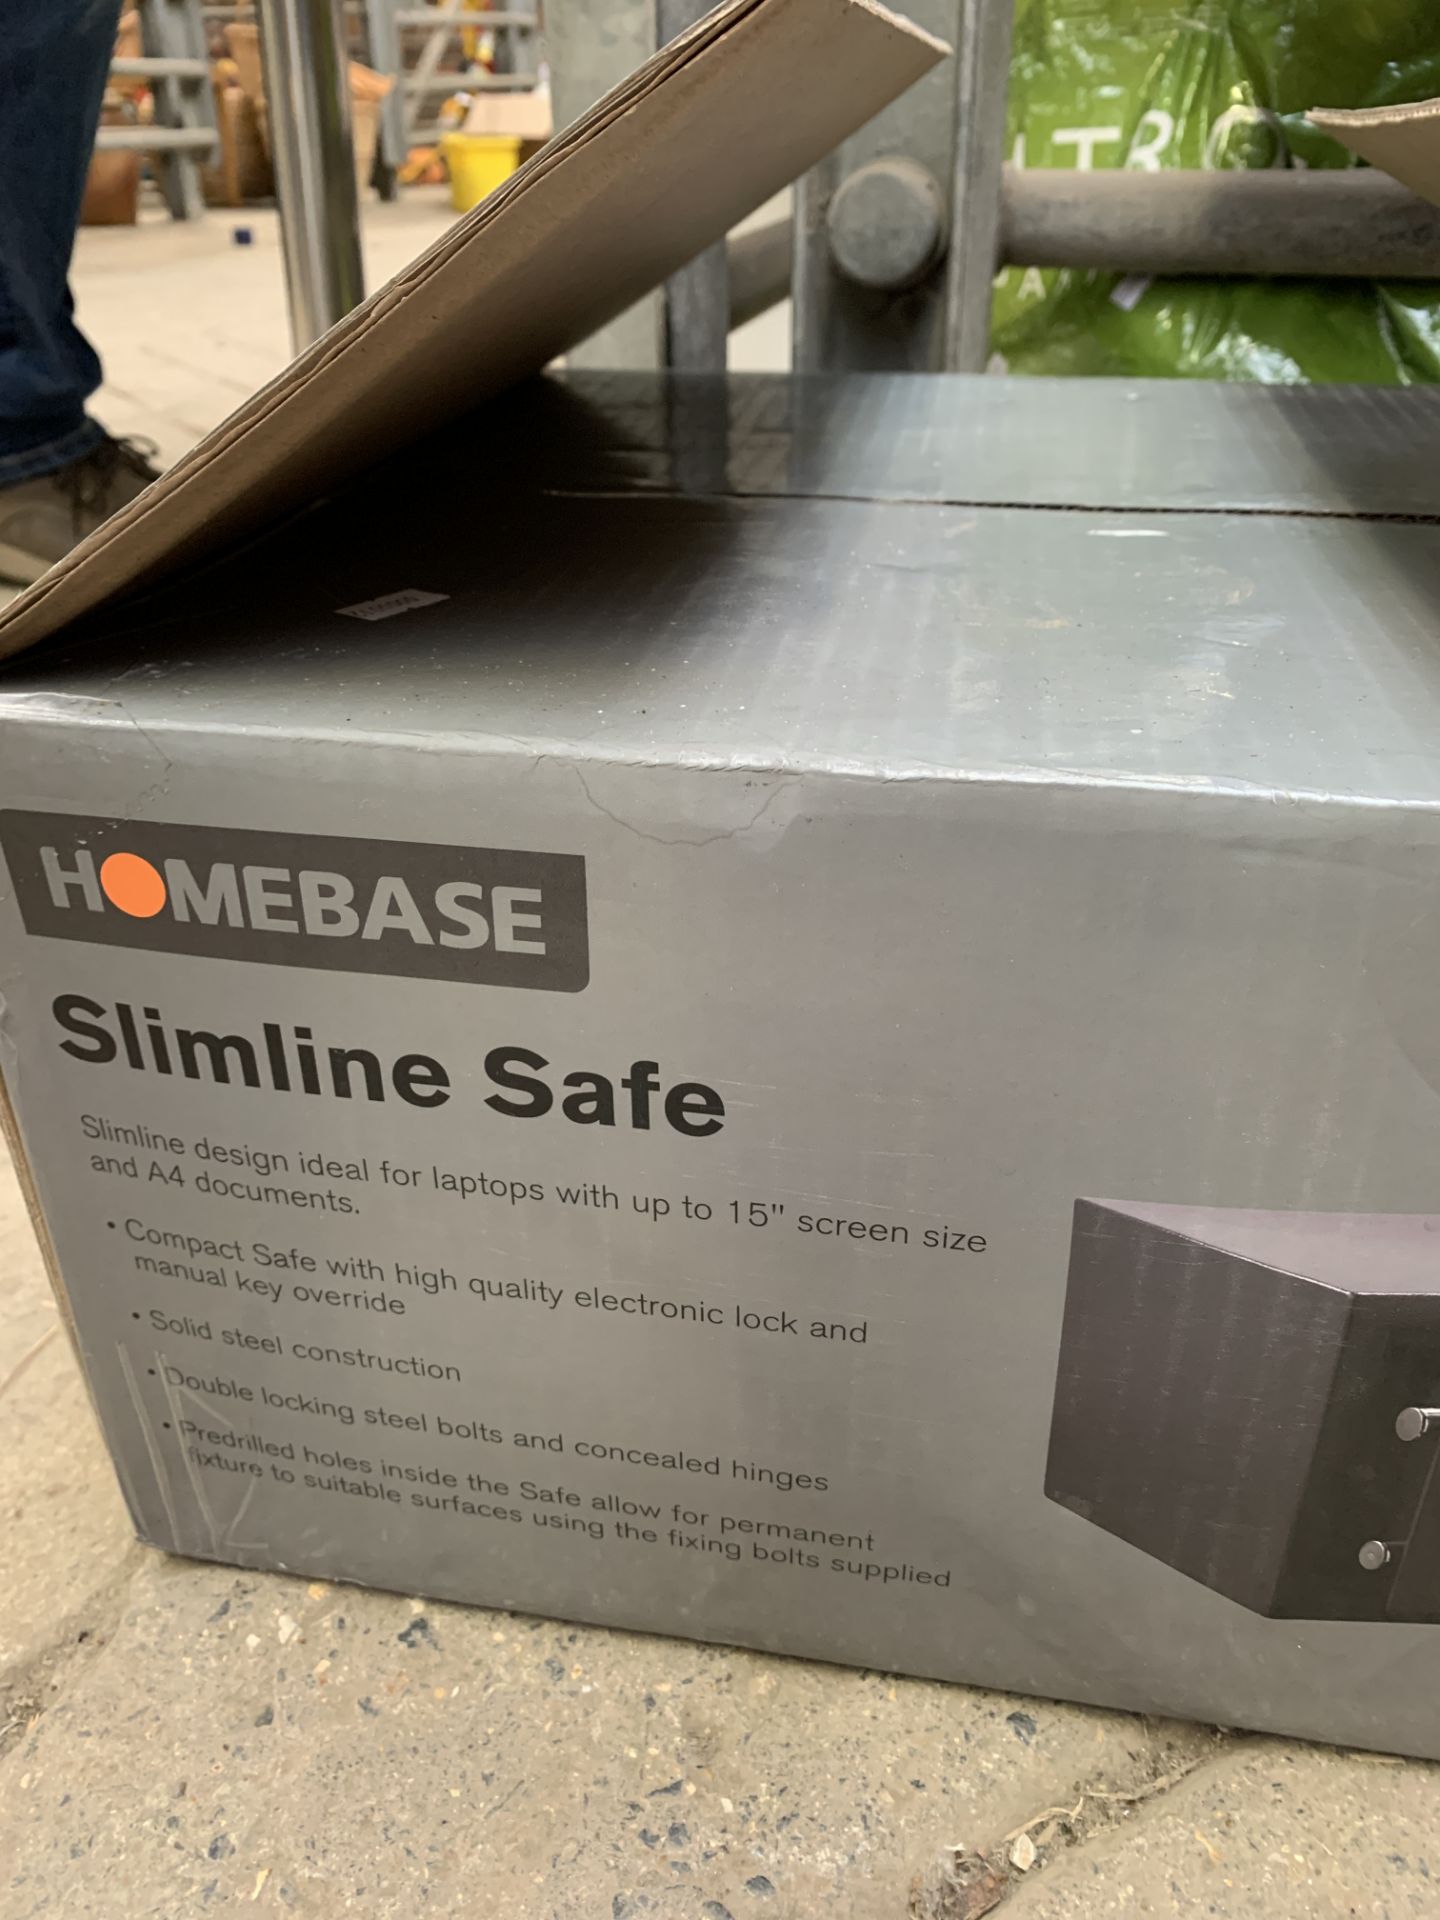 Homebase slimline safe model S-35LCD(II) - Image 2 of 3